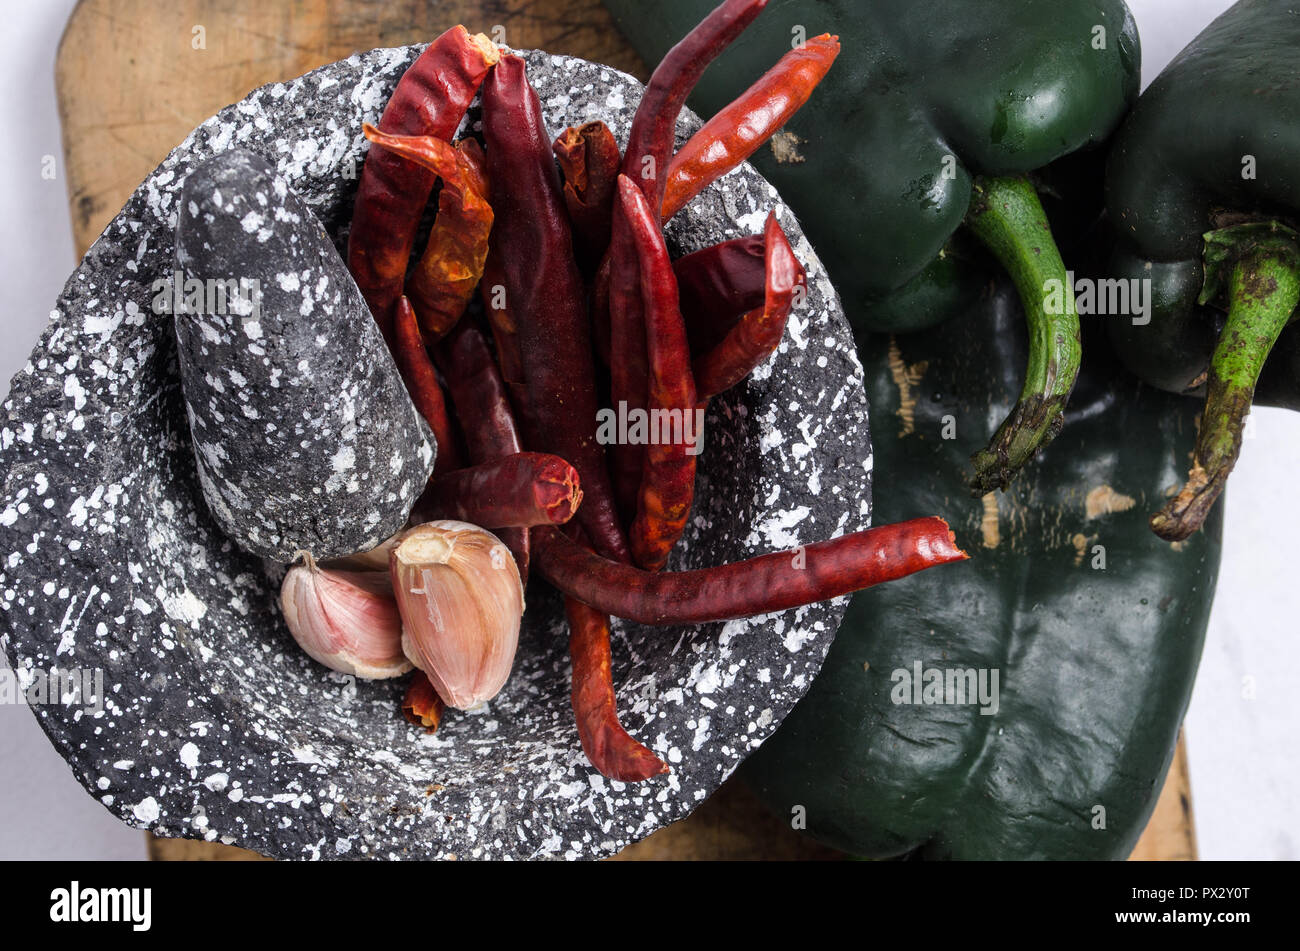 Mortero de piedra negra con los ingredientes para la salsa, pimientos rojos, ajo crudo, sobre una tabla de madera con quemaduras y grietas. Foto de stock